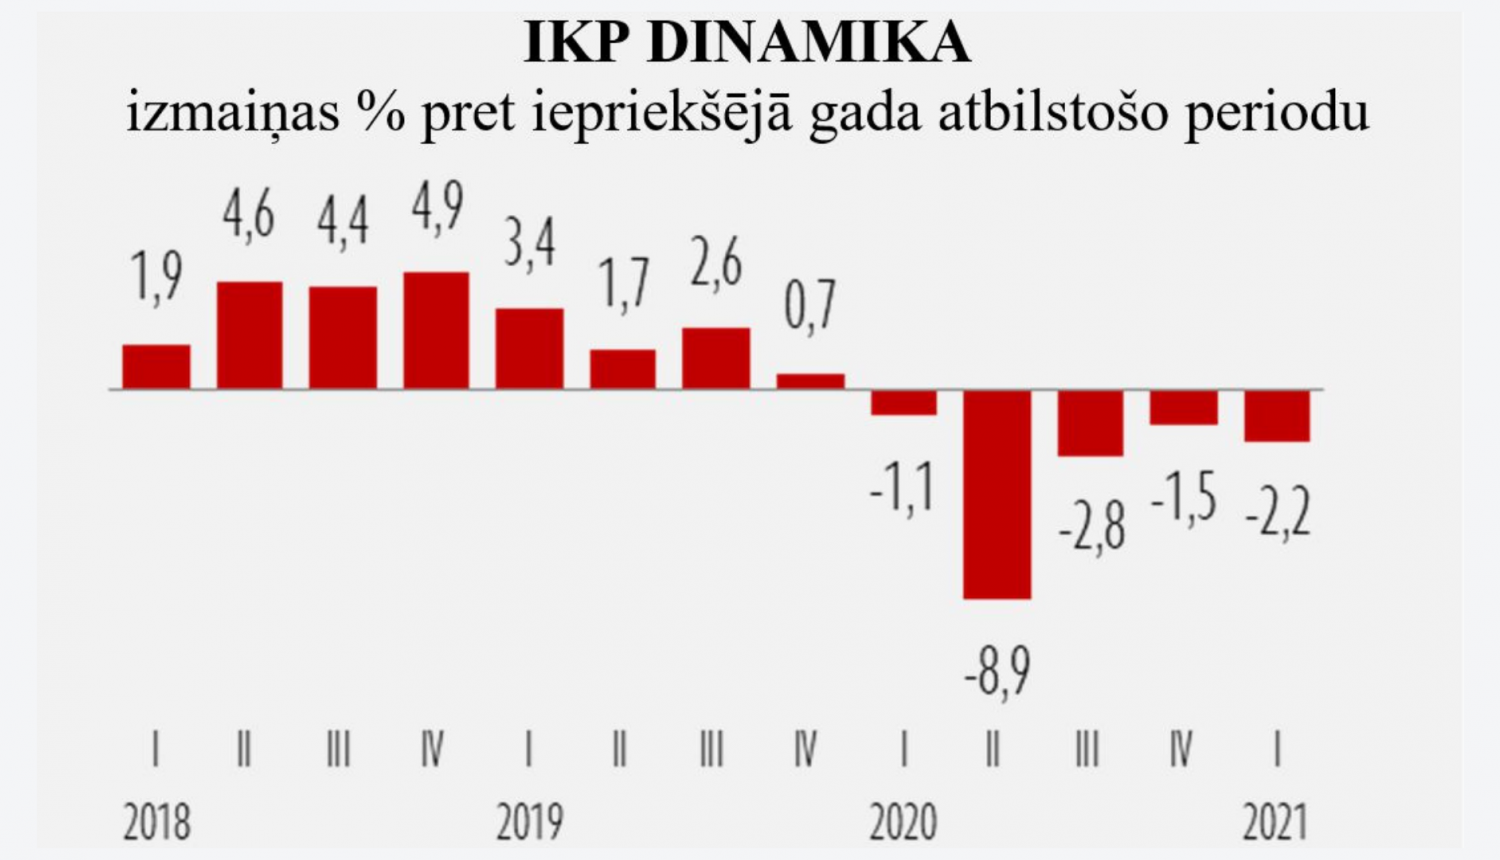 IKP dinamika